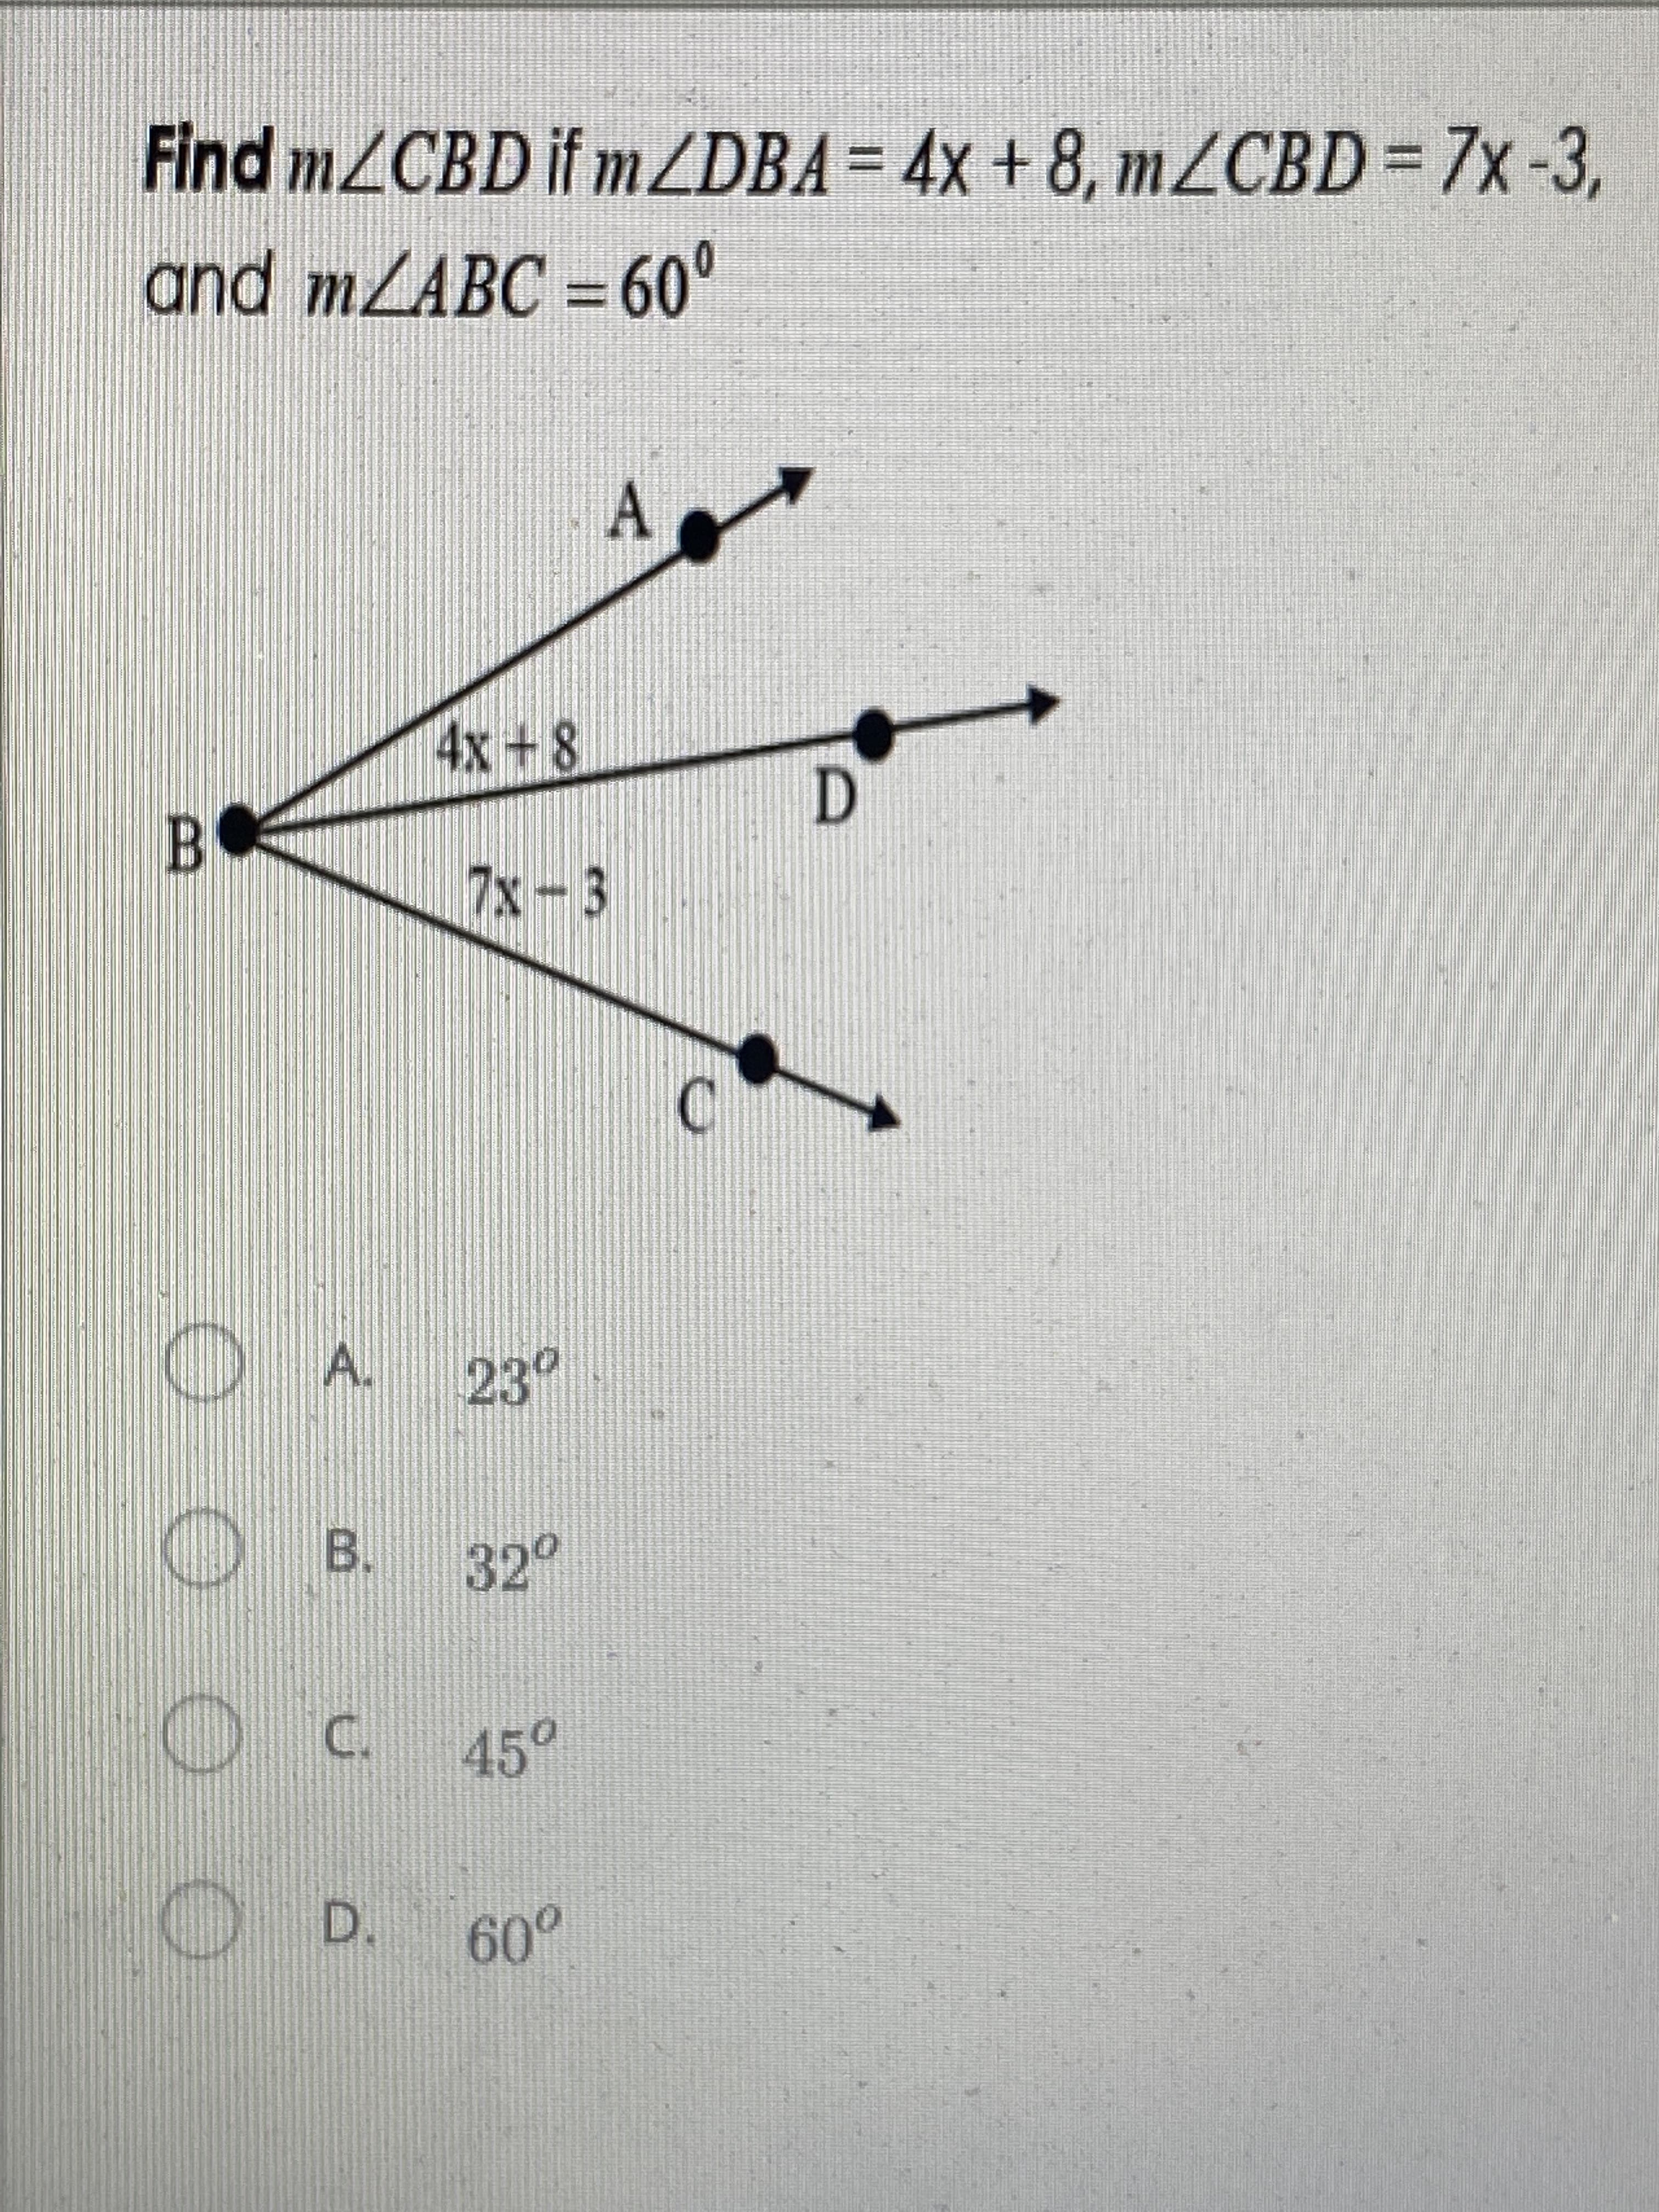 Find MZCBD if MZDBA= 4x + 8, mZCBD = 7x-3,
and mLABC = 60°
%3D
